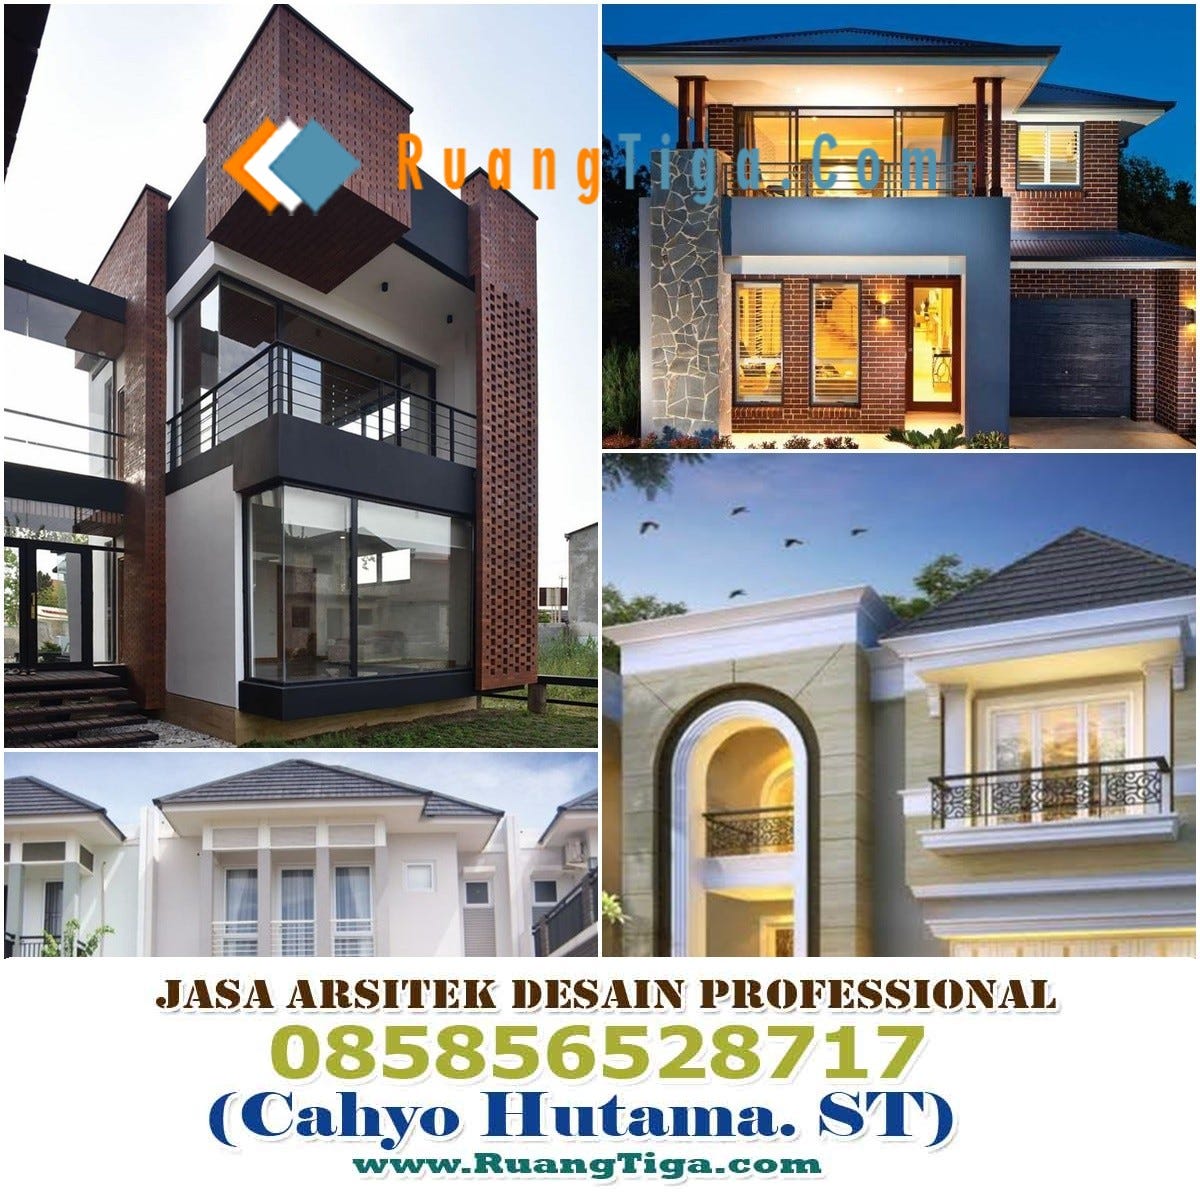 085856528717 Jasa Arsitek Fasad Desain Rumah Jasa Desain Rumah